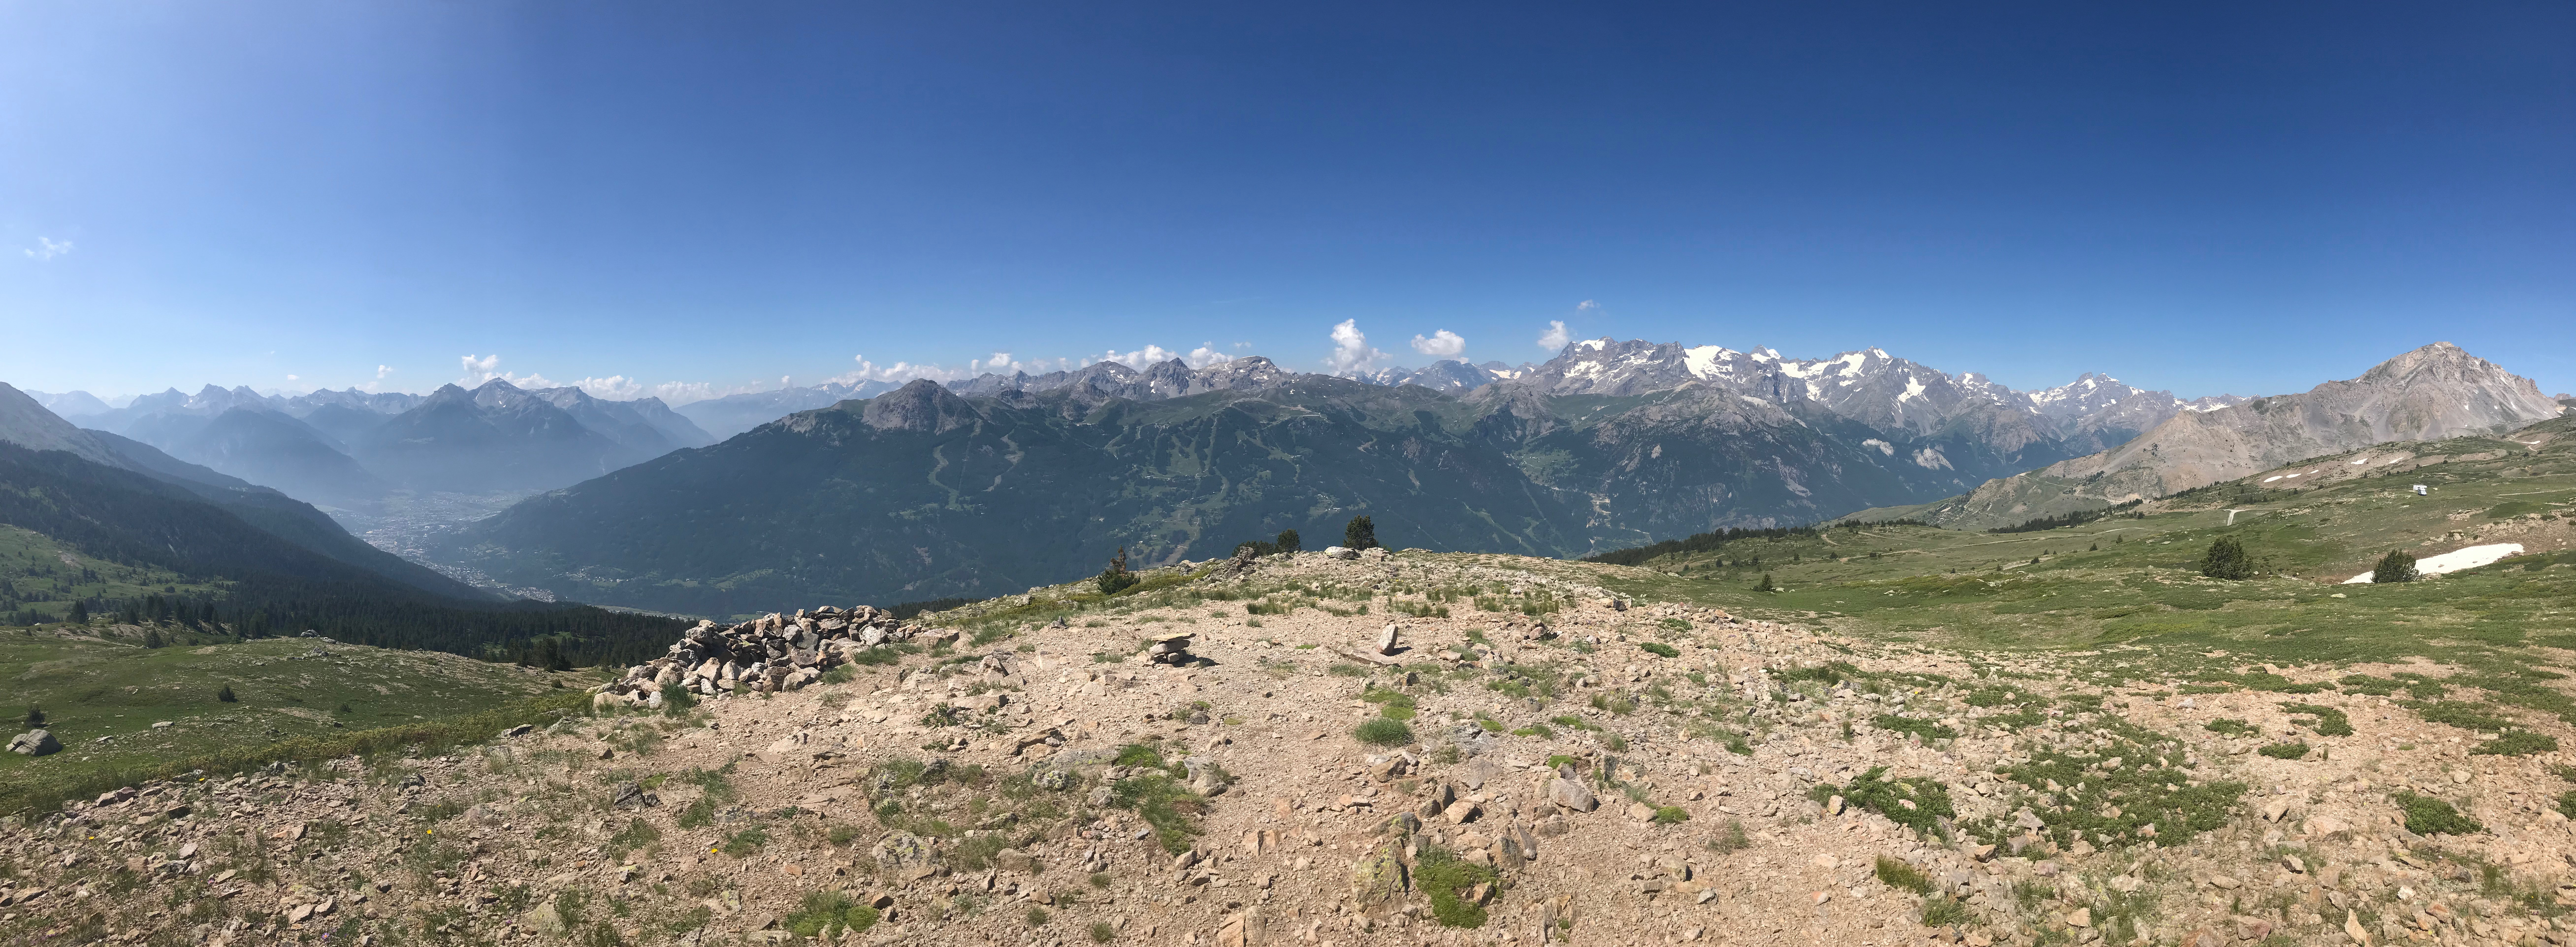 Panoramique au col du Granon, au fond à gauche notre point de départ Briançon, à droite le massif des Écrins. Marche et Rêve / Jacky Fabis